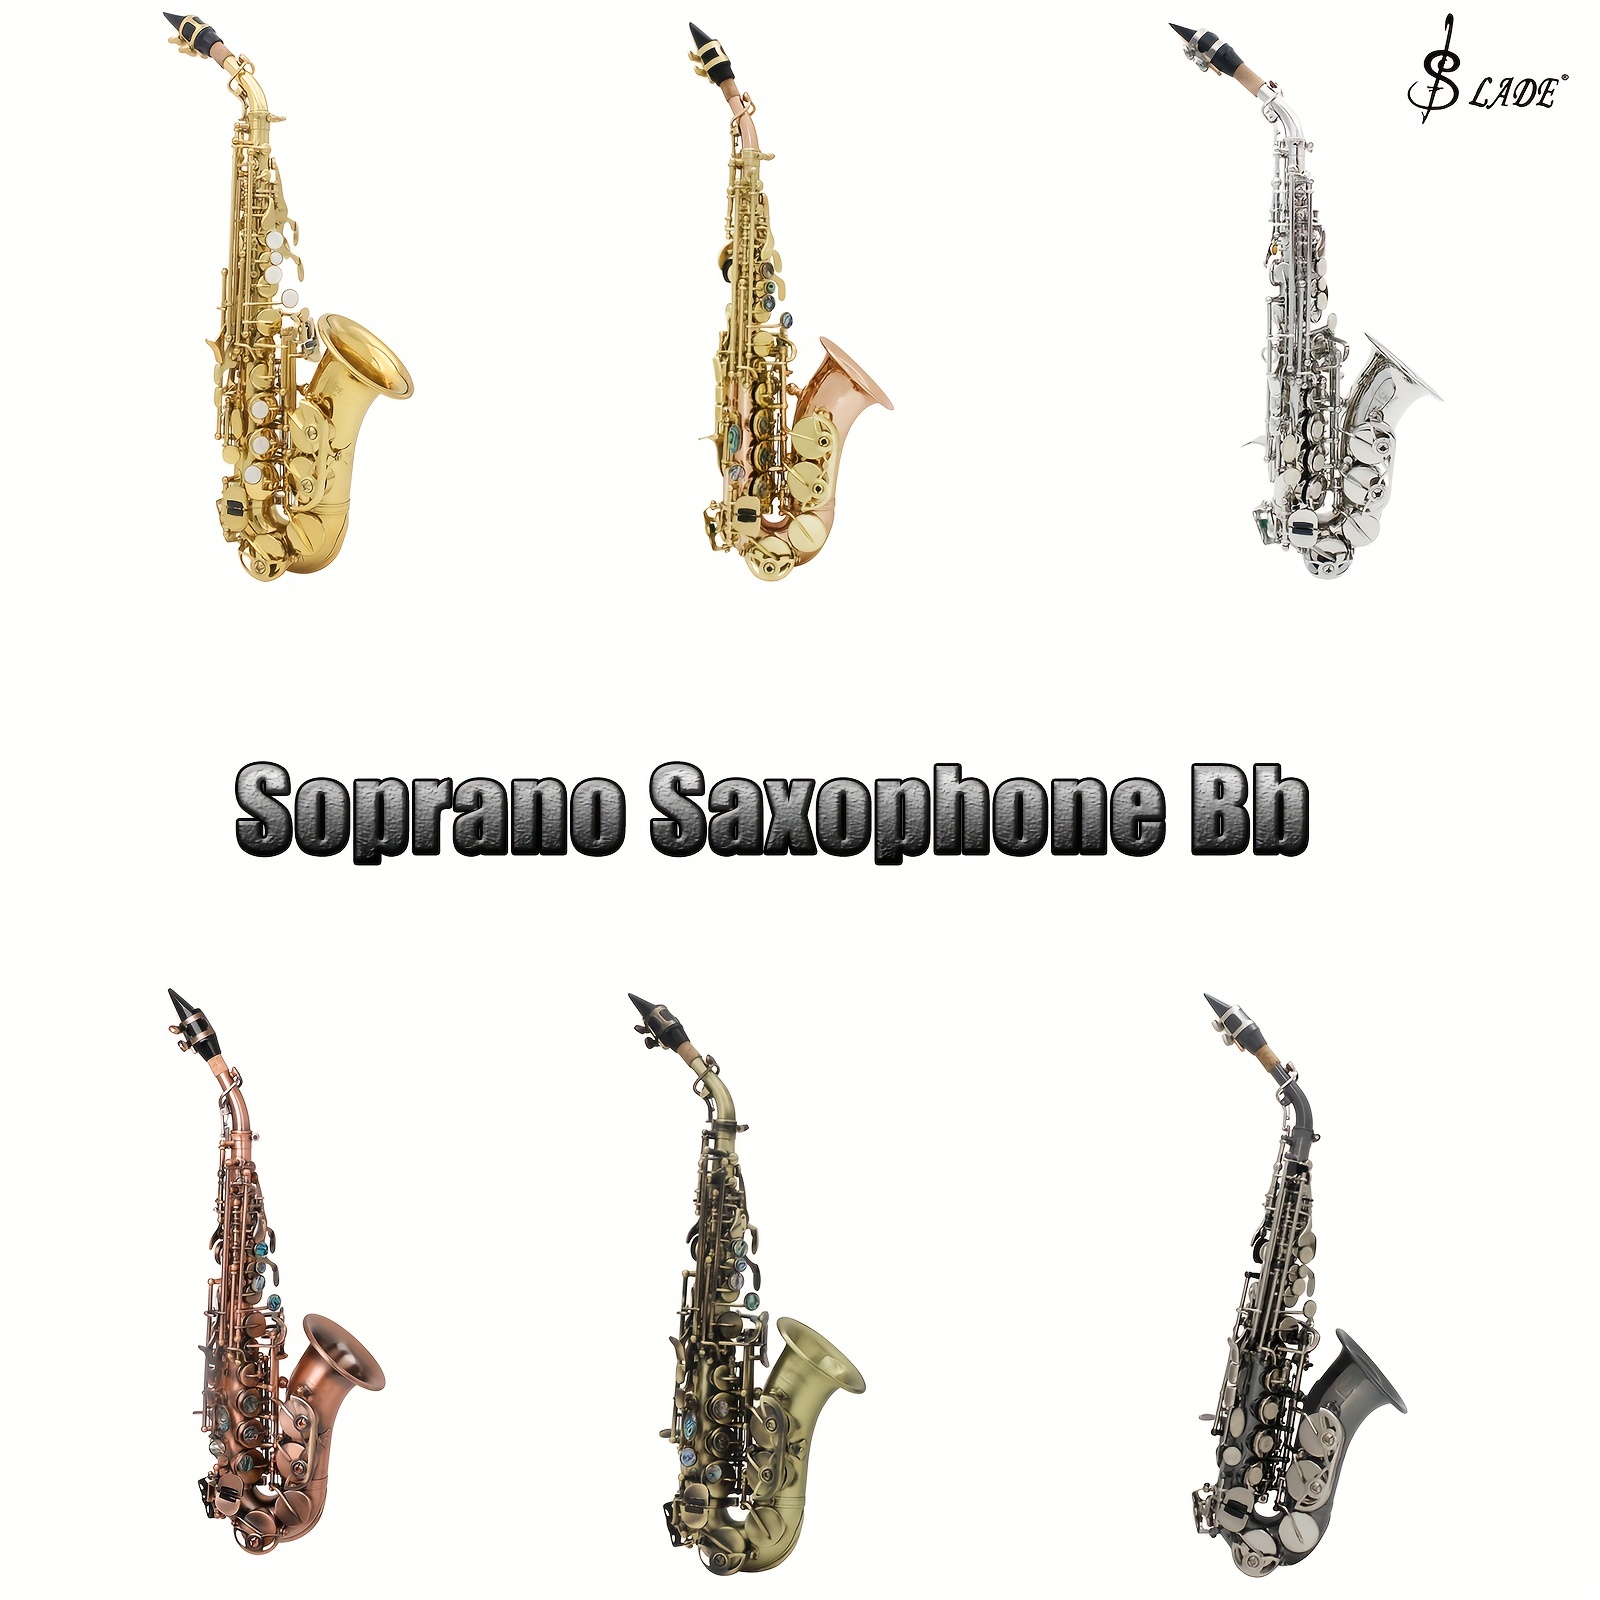 Juguete del saxofón imagen de archivo. Imagen de instrumento - 32858619